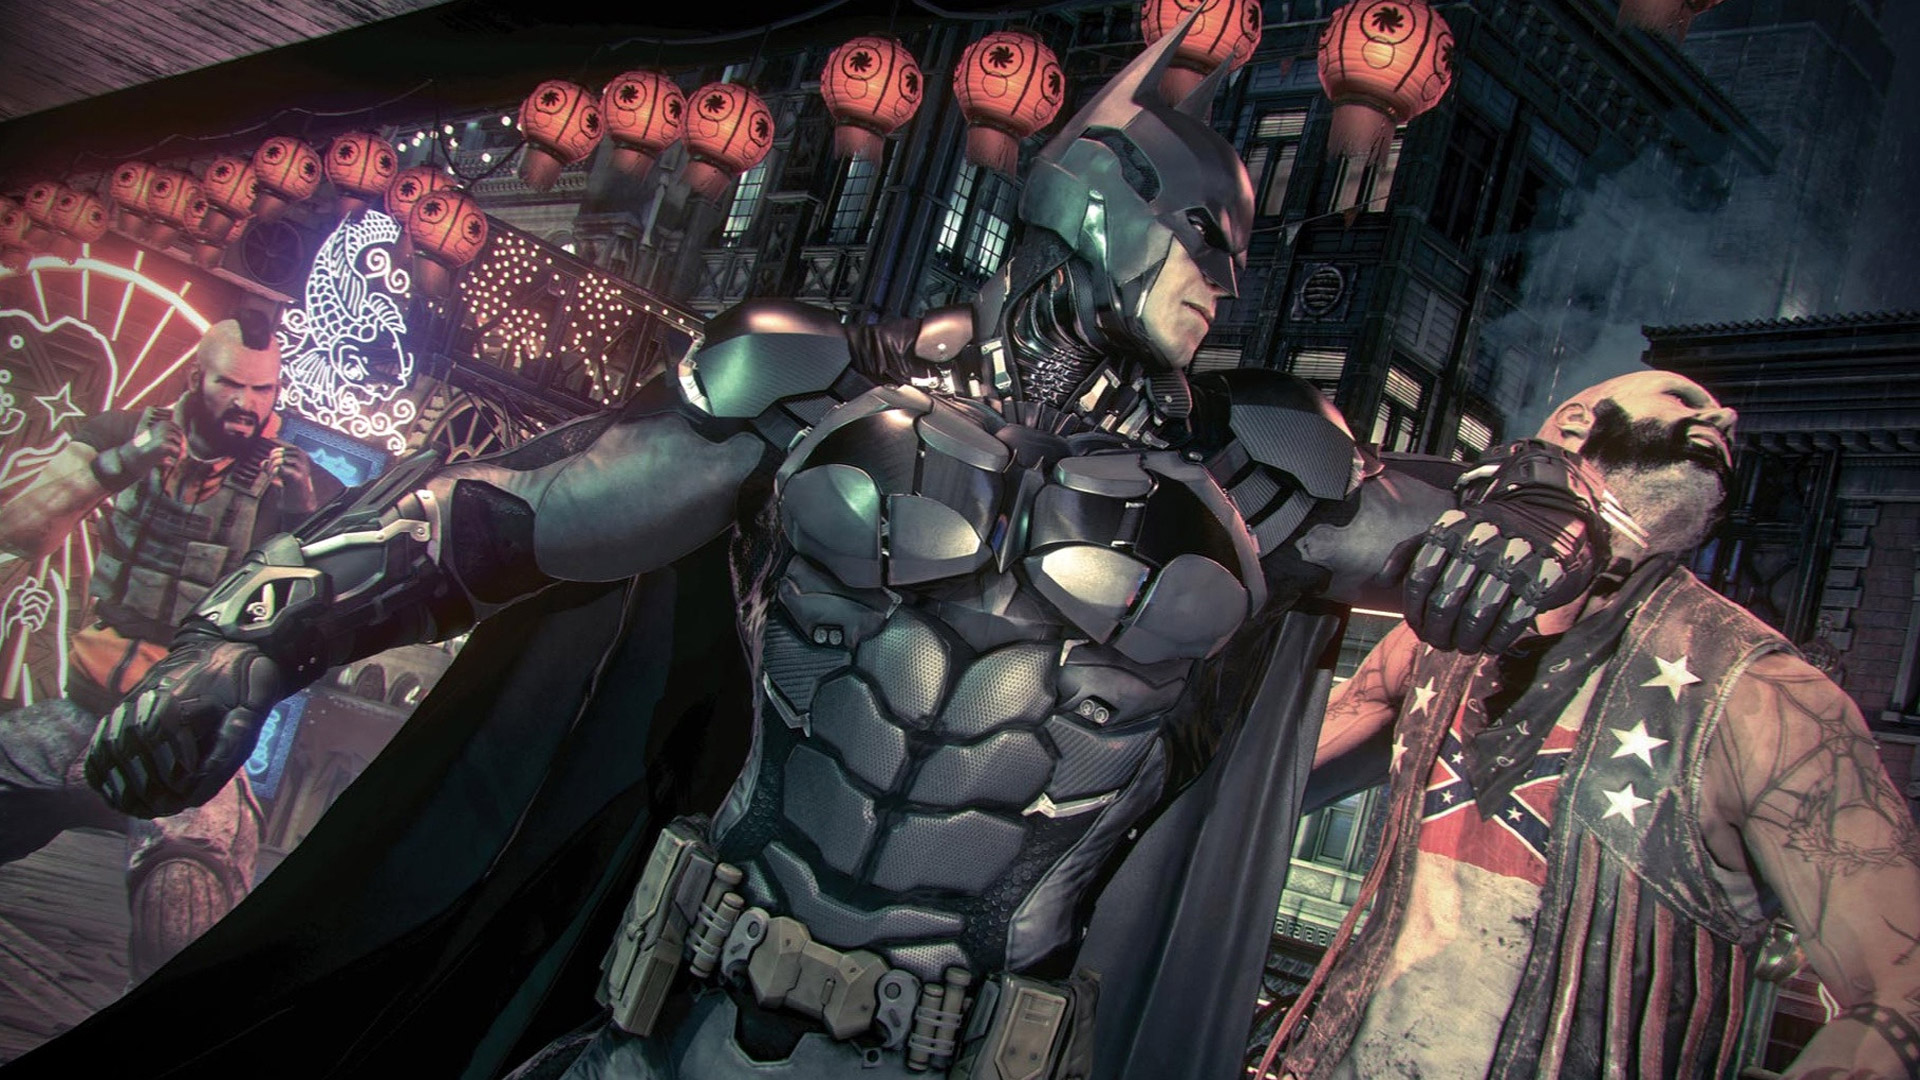 Batman Abs Arkham Knight , HD Wallpaper & Backgrounds